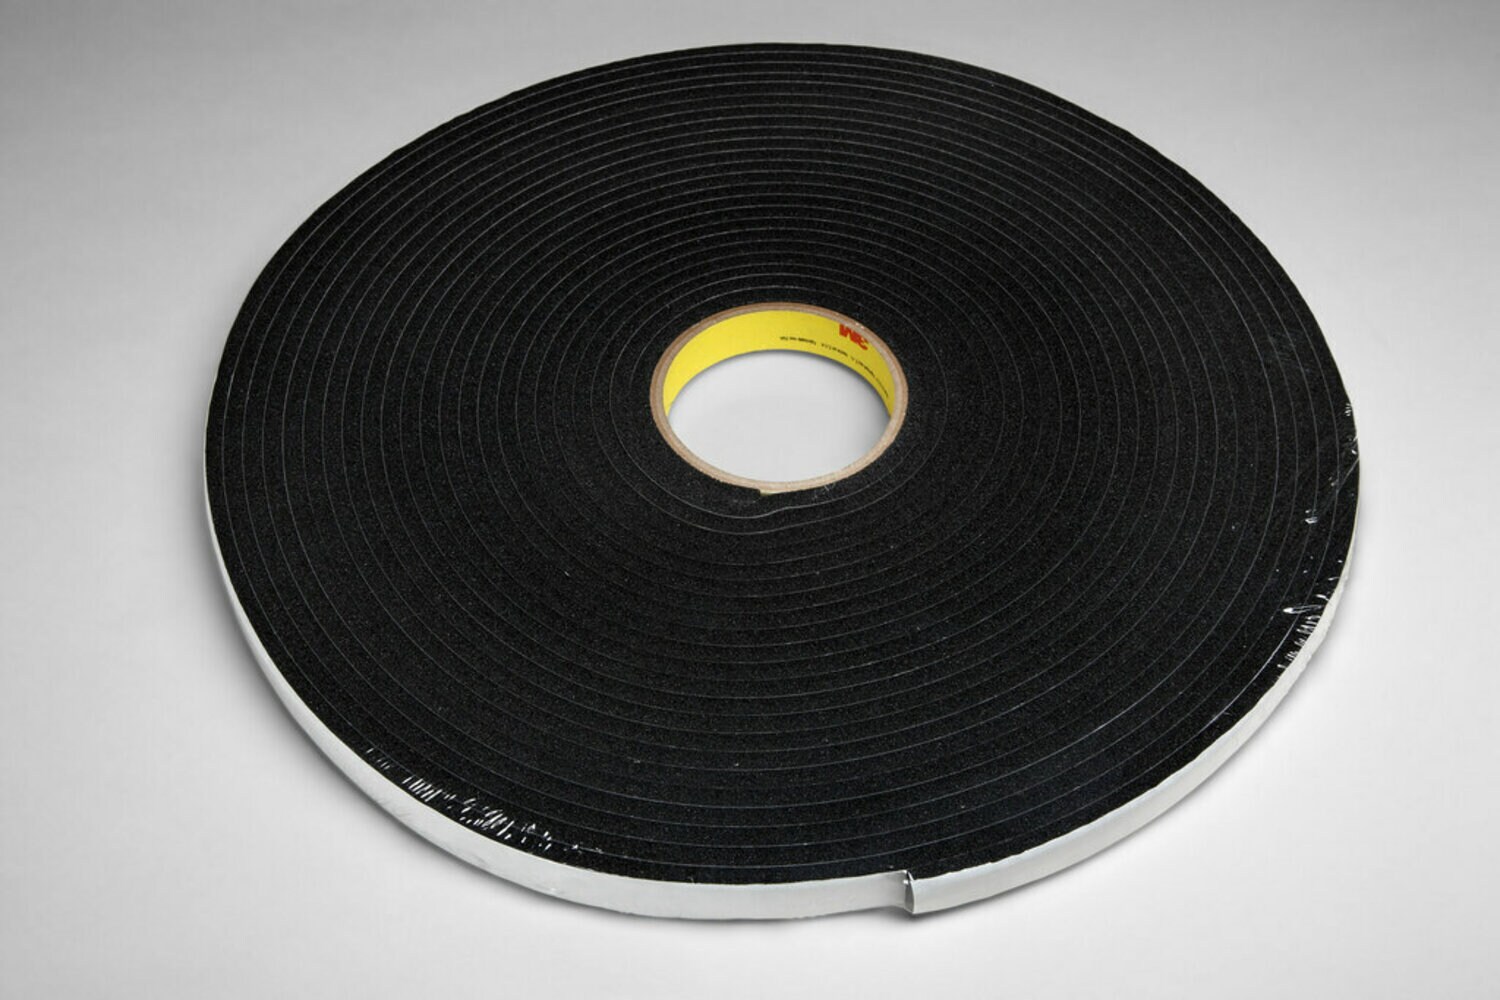 7010331578 - 3M Vinyl Foam Tape 4504, Black, 1/4 in x 18 yd, 250 mil, 36 rolls per
case